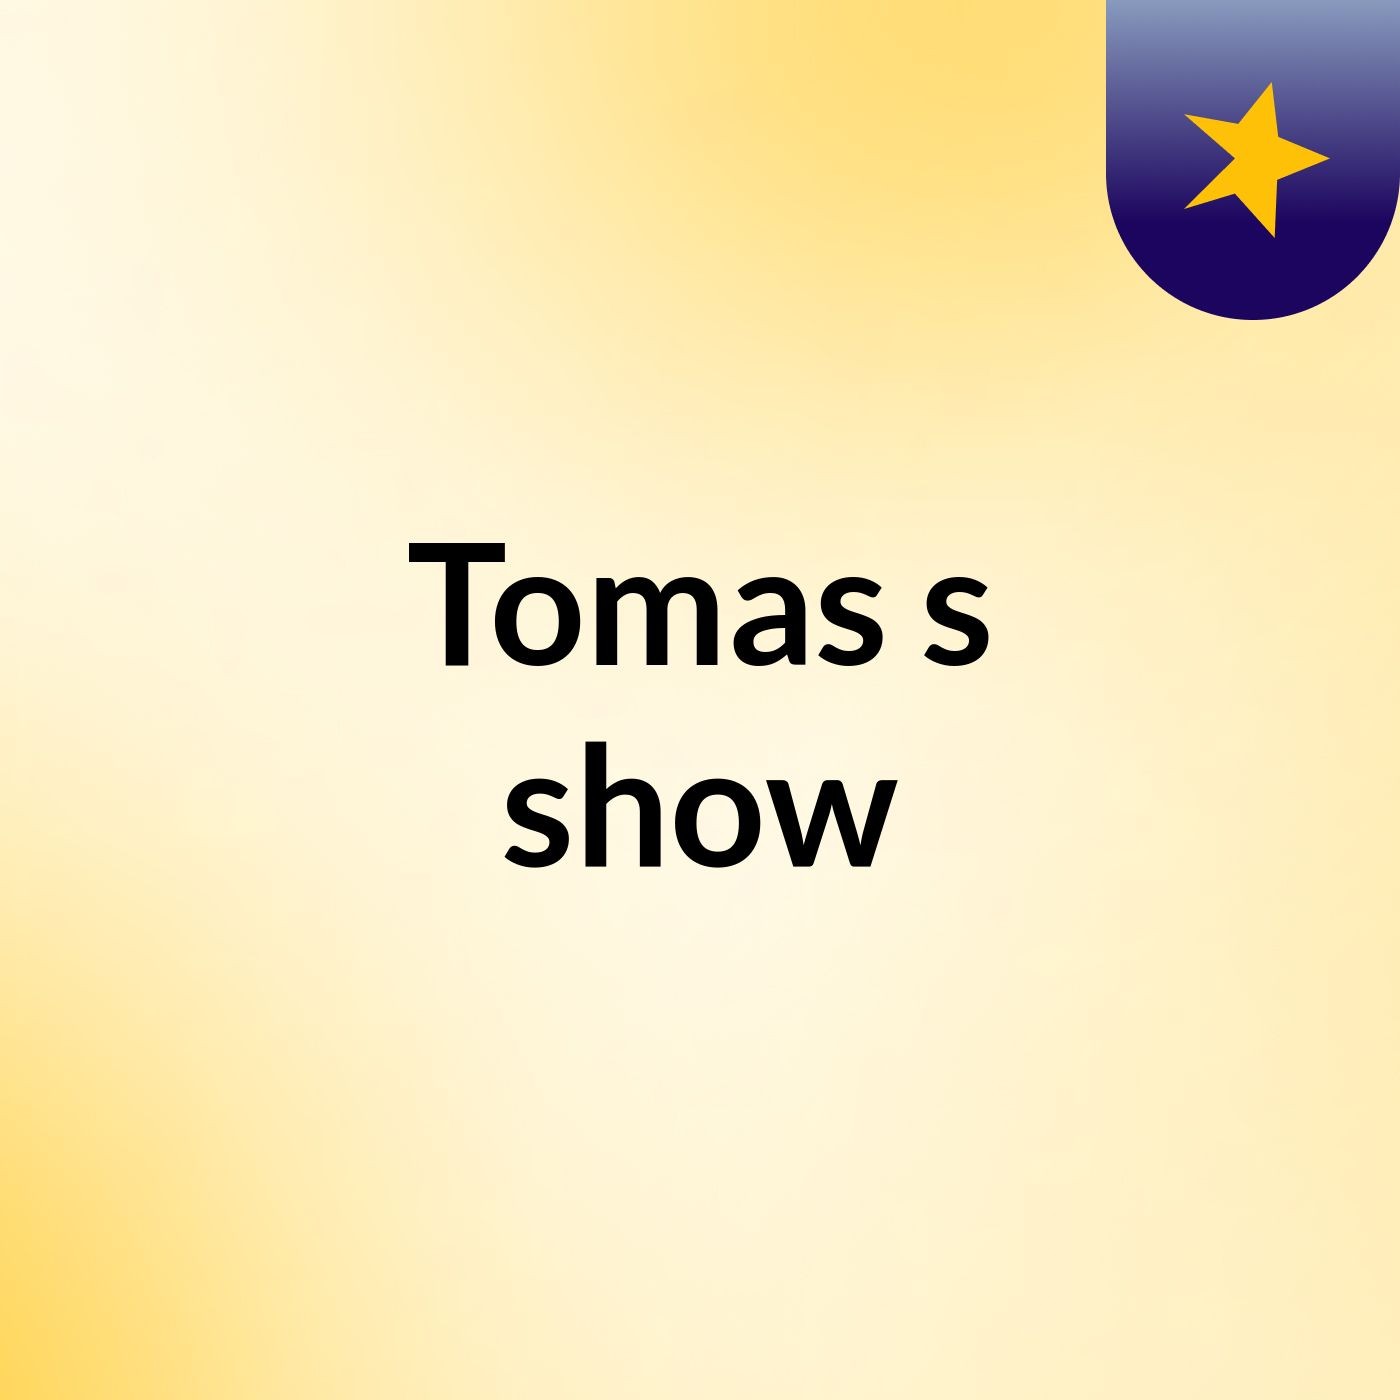 Tomas's show